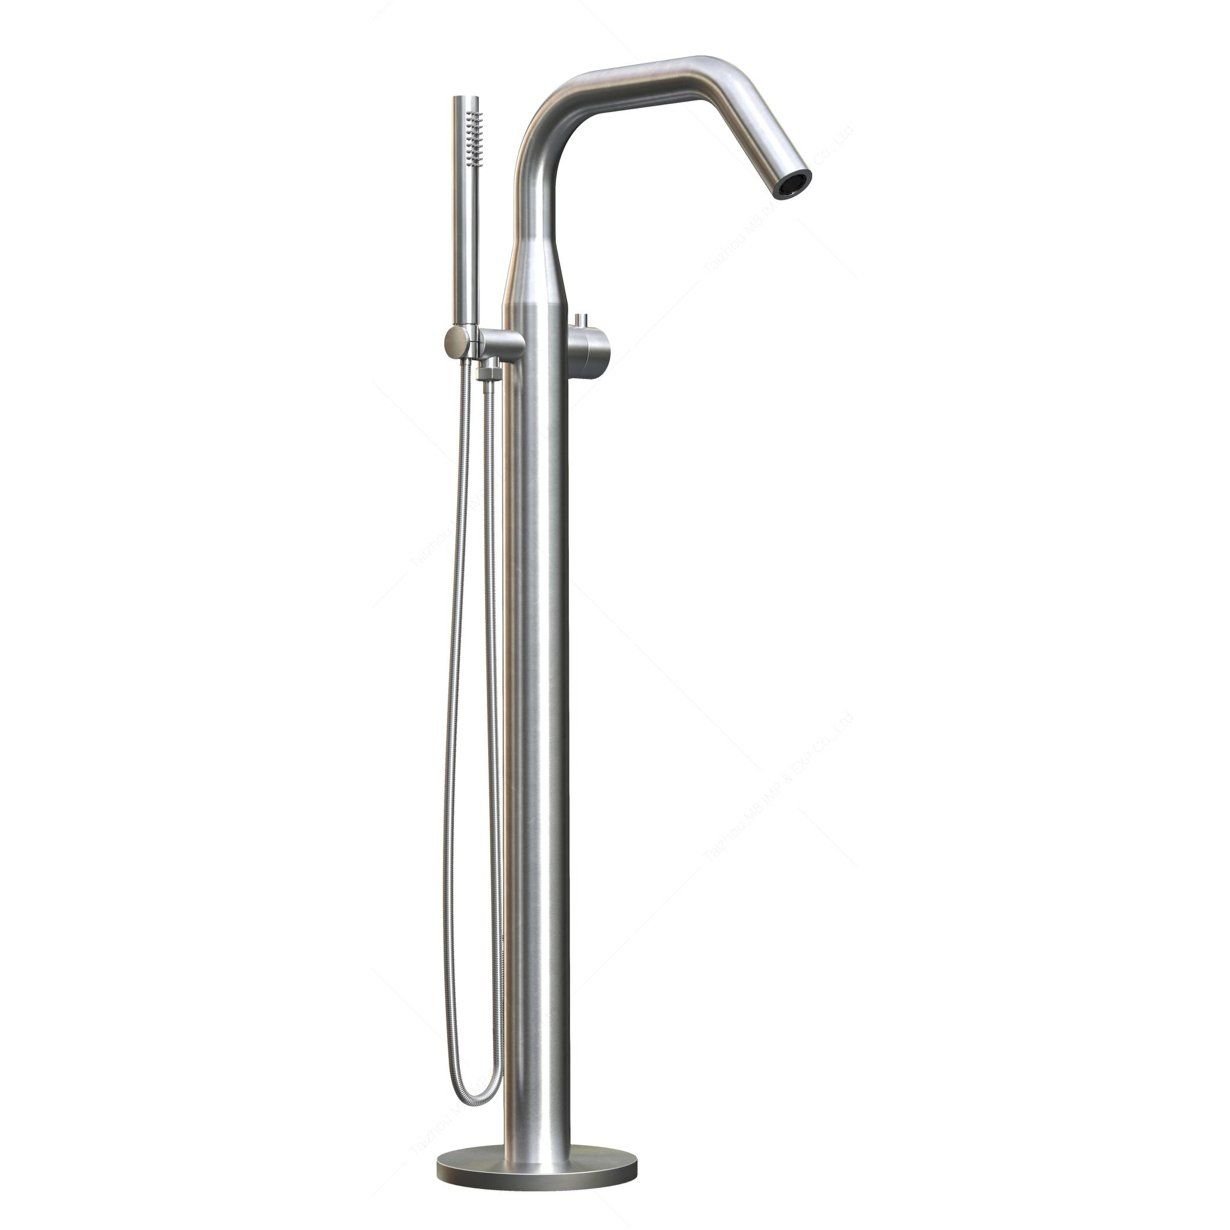  Vòi bồn tắm với sen cầm tay bằng stainless steel 316L - A1012-MS 